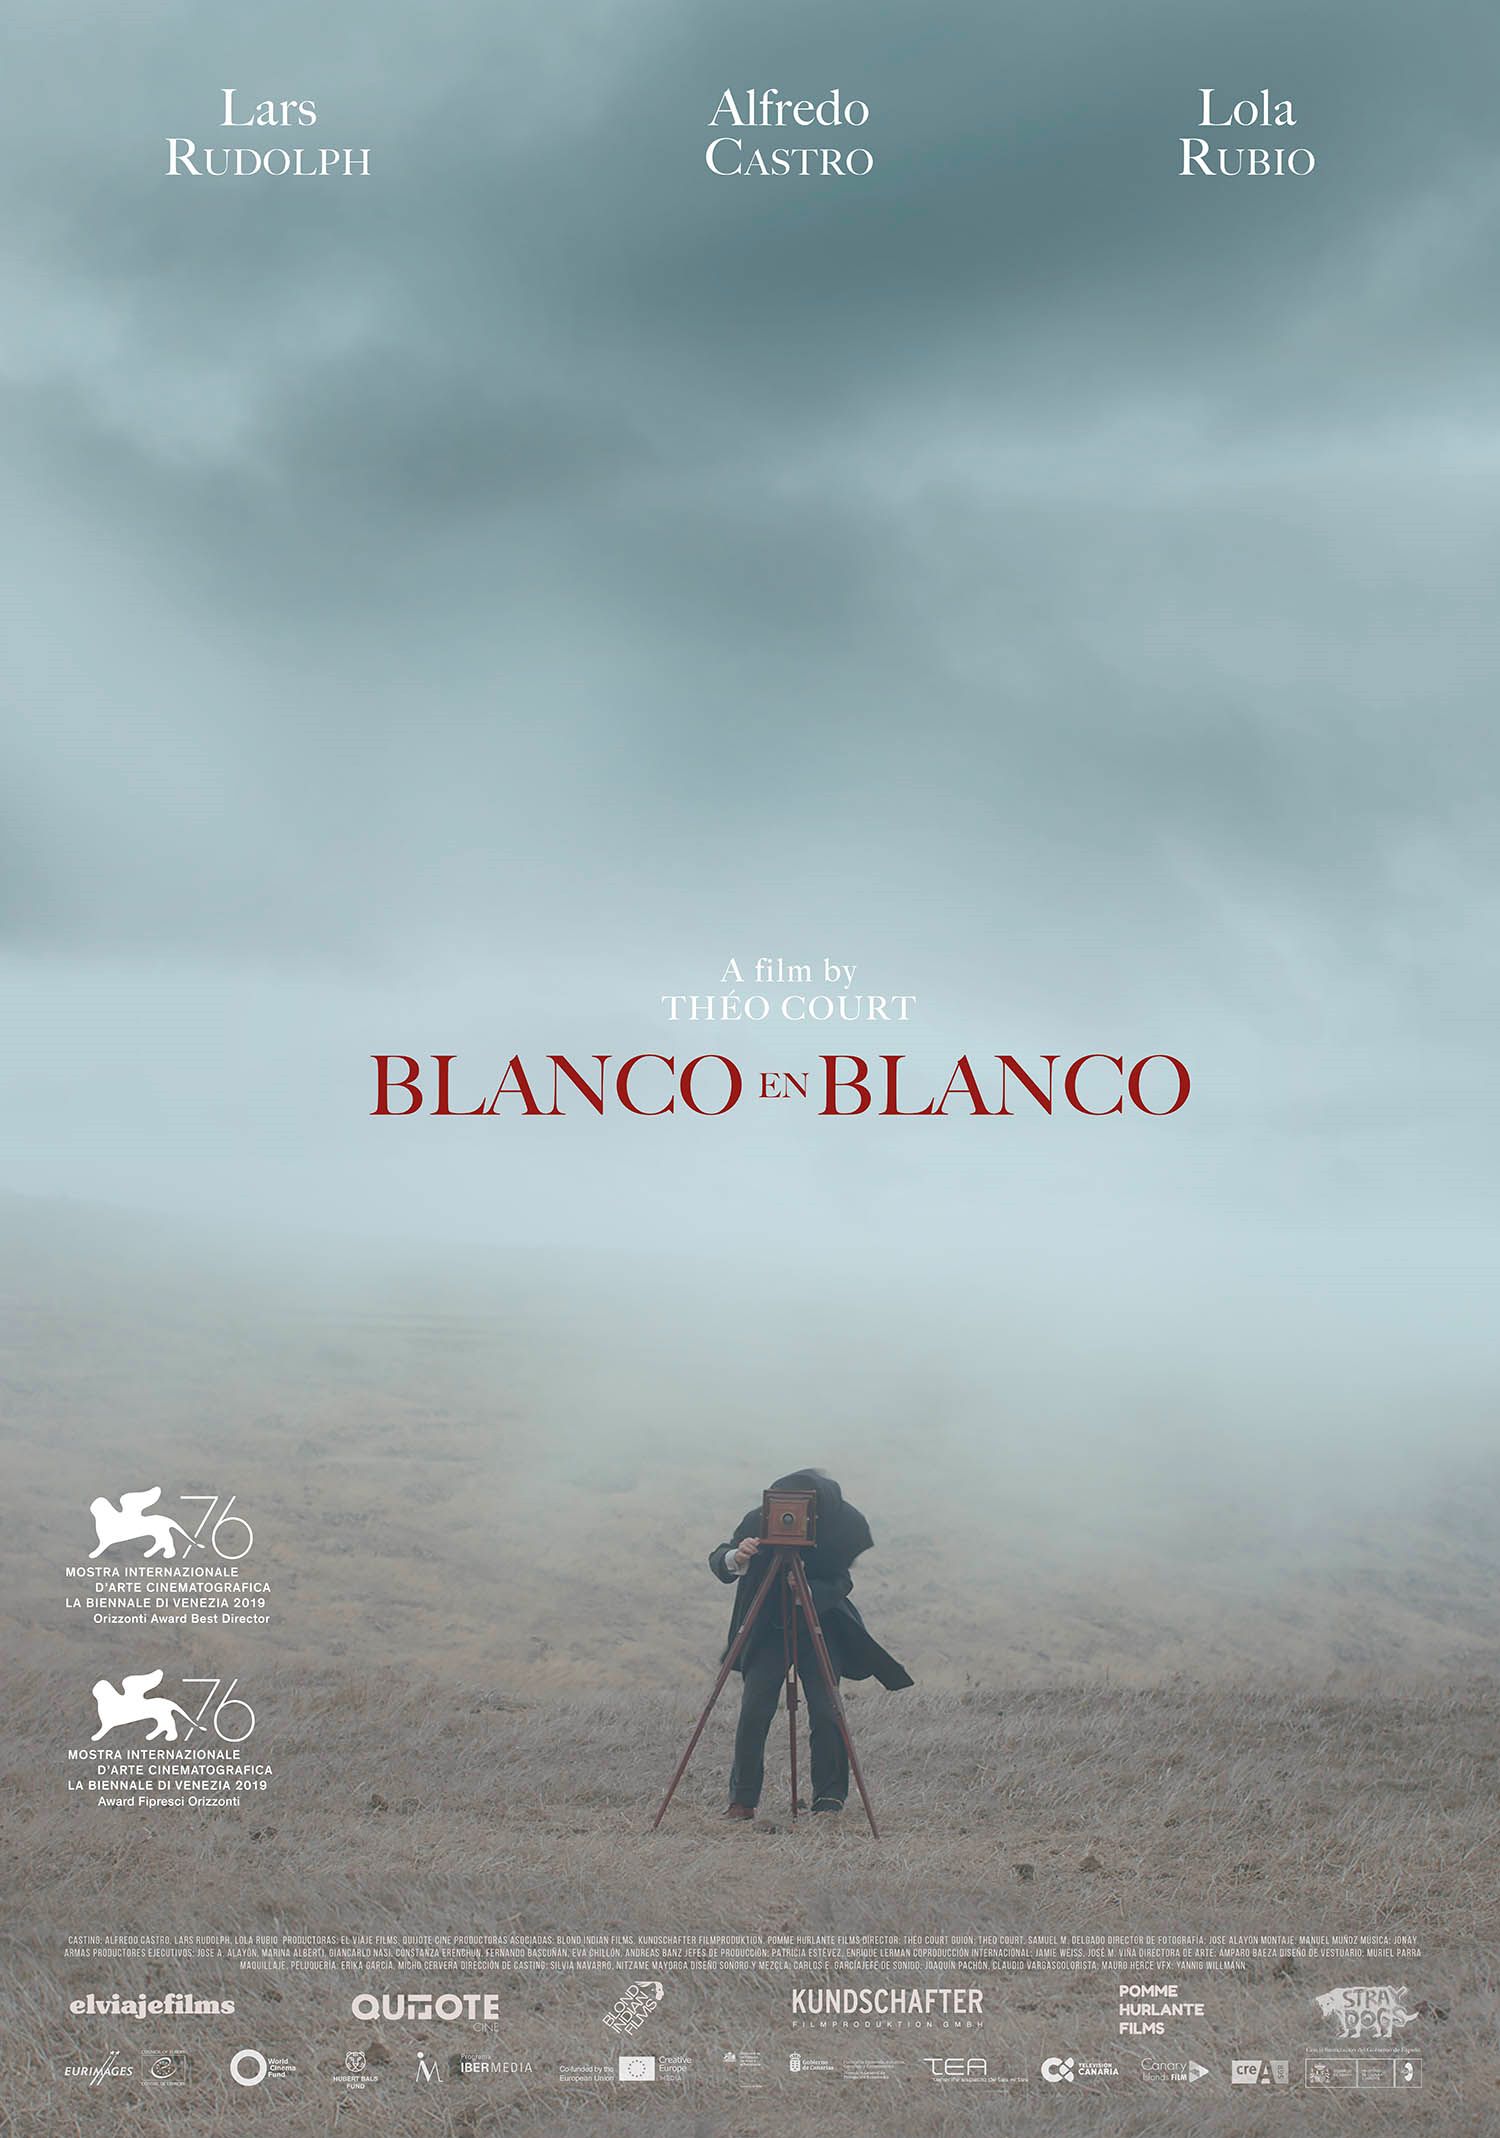 Blanco en blanco, la extinción de los pueblos originarios en Patagonia – Juan Salvador Miranda – Opinión